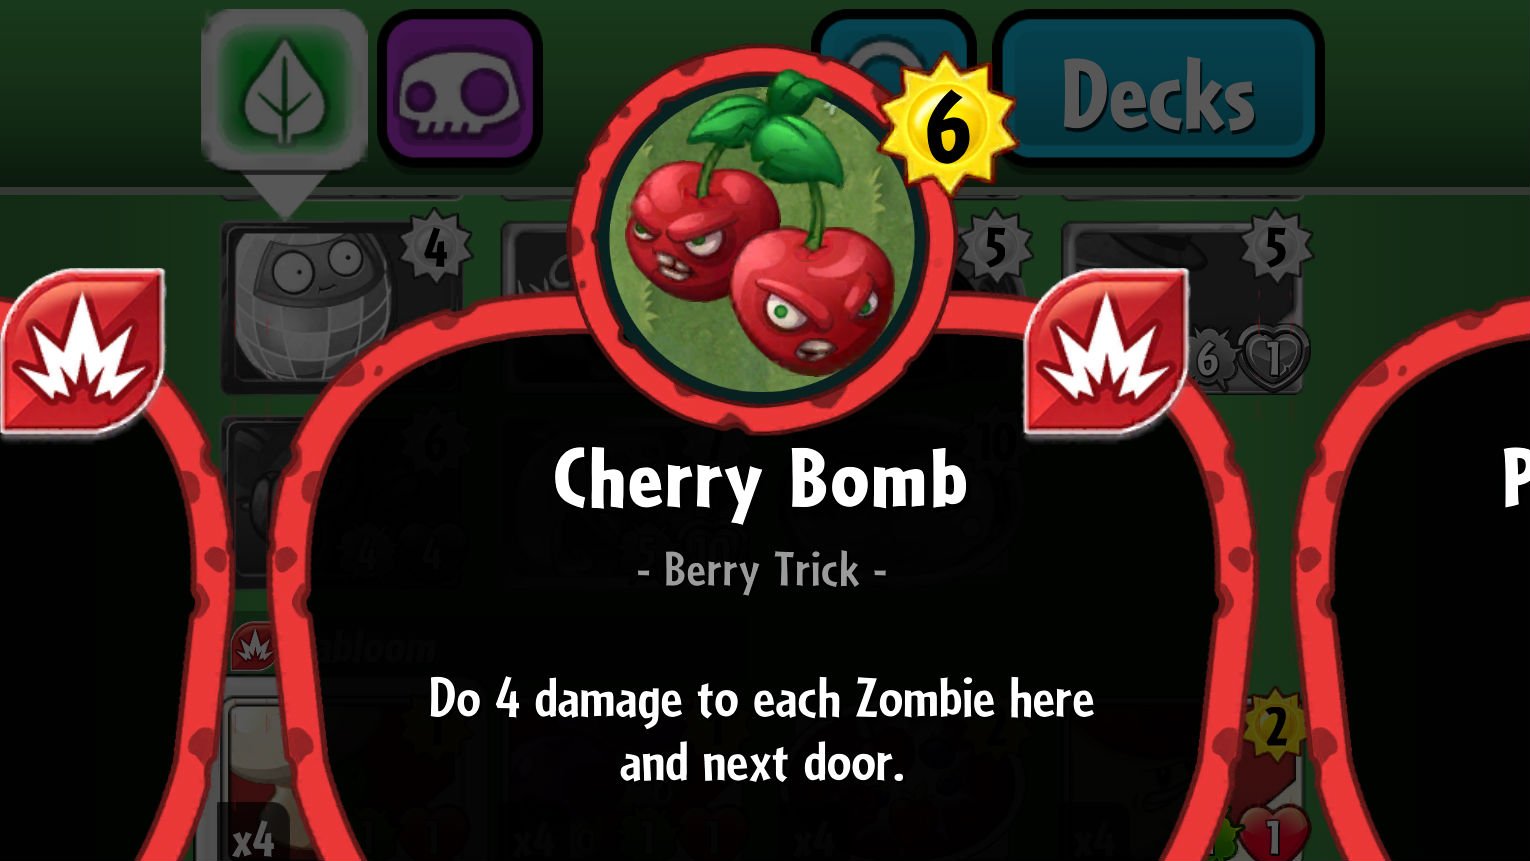 Plants vs. Zombies Cherry Bomb